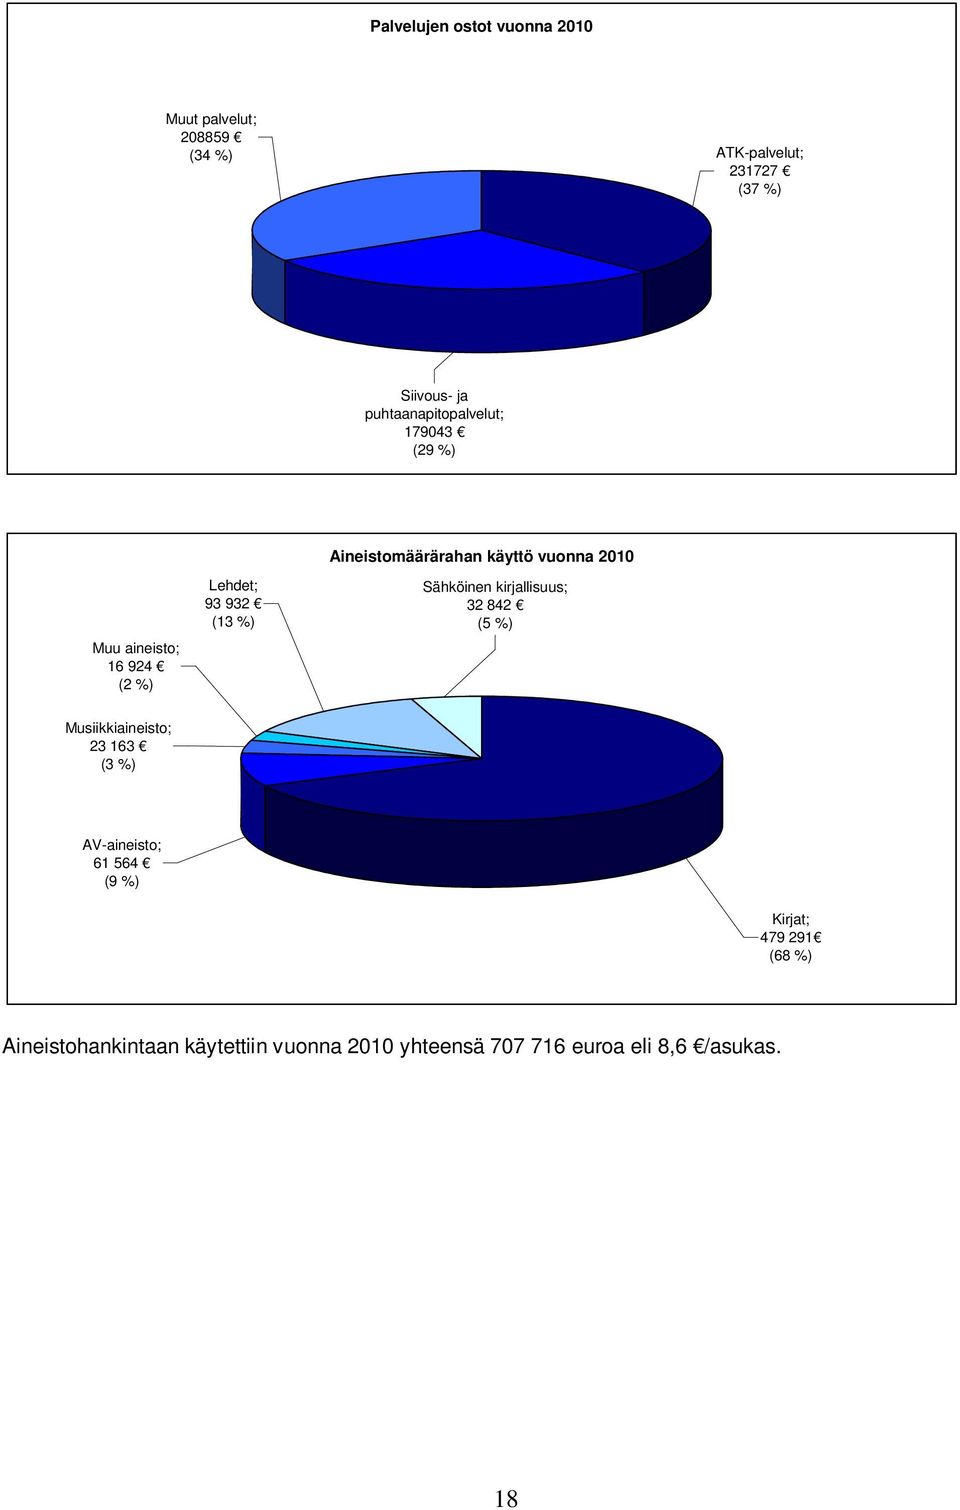 käyttö vuonna 2010 Sähköinen kirjallisuus; 32 842 (5 %) Musiikkiaineisto; 23 163 (3 %) AV-aineisto; 61